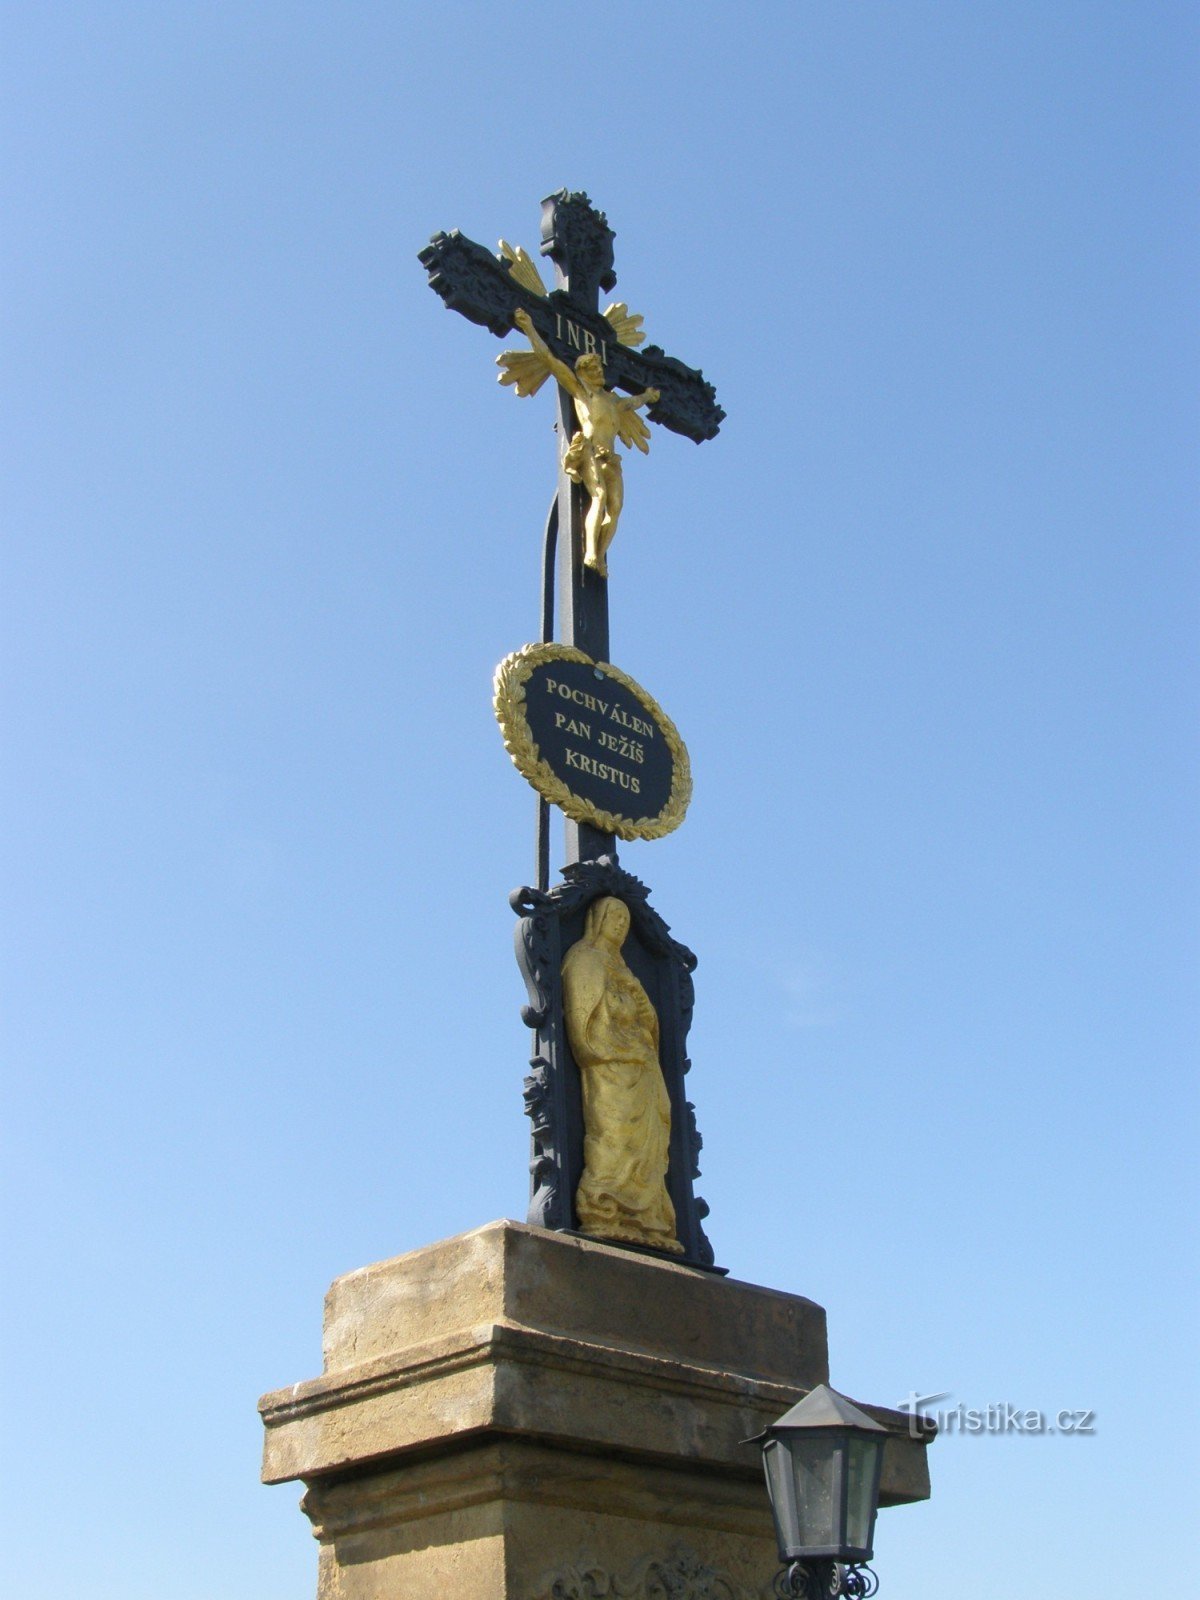 Lažany - monumento a la crucifixión